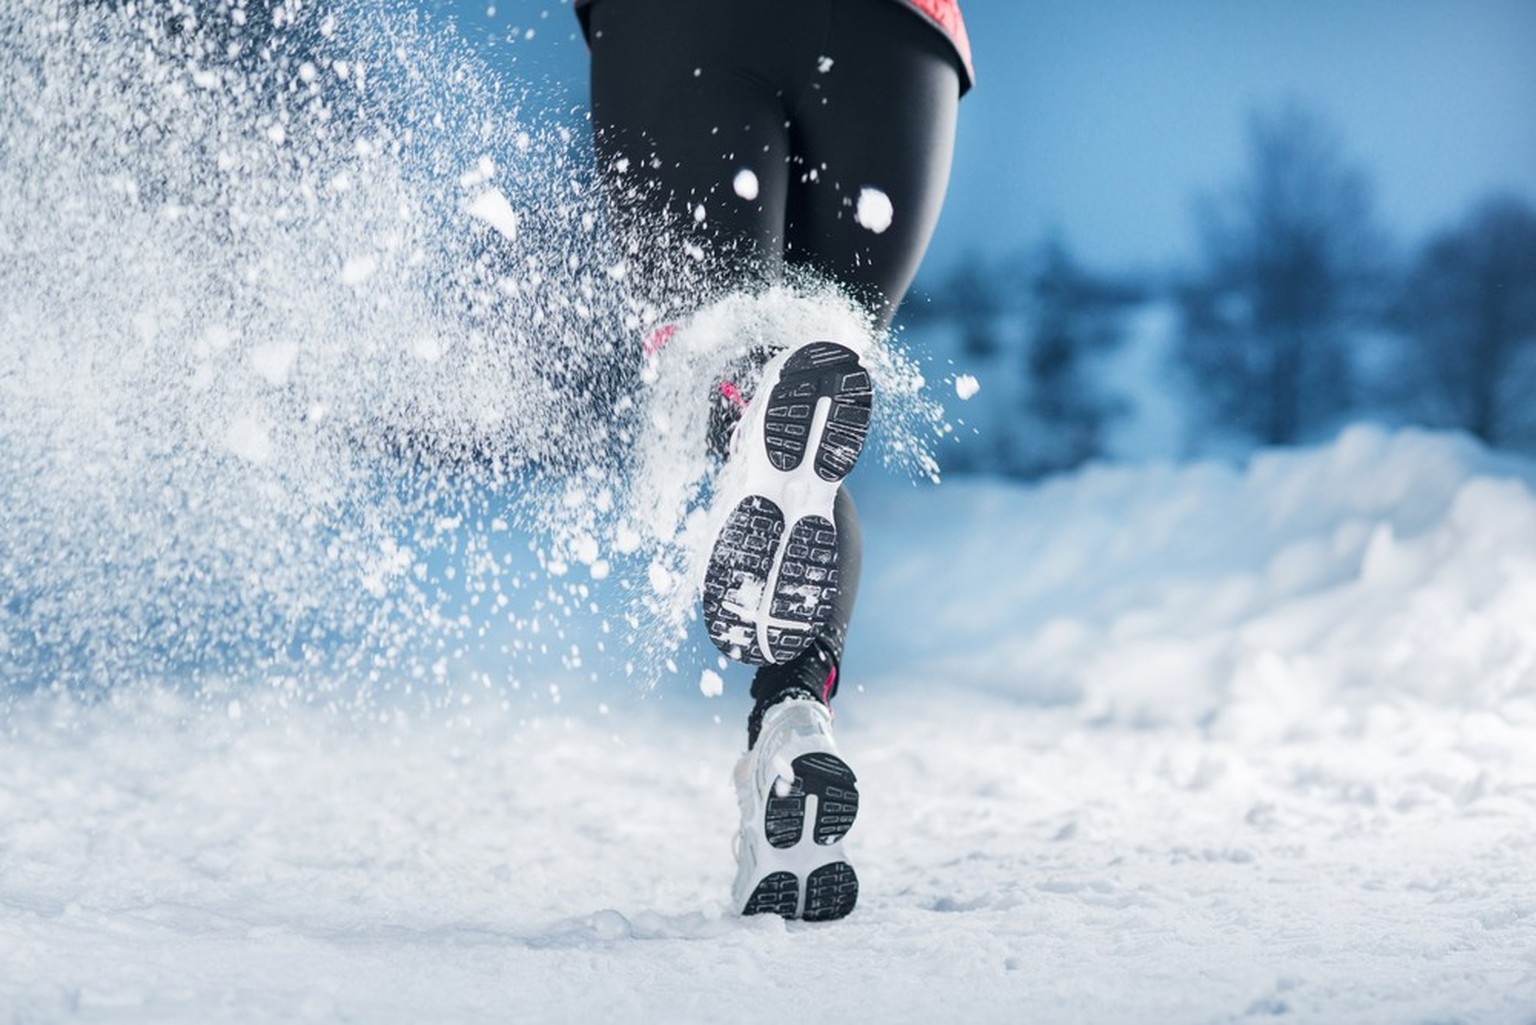 Sport im Winter hilft, geistige Ermüdung und Stress abzubauen und das Wohlbefinden zu steigern.